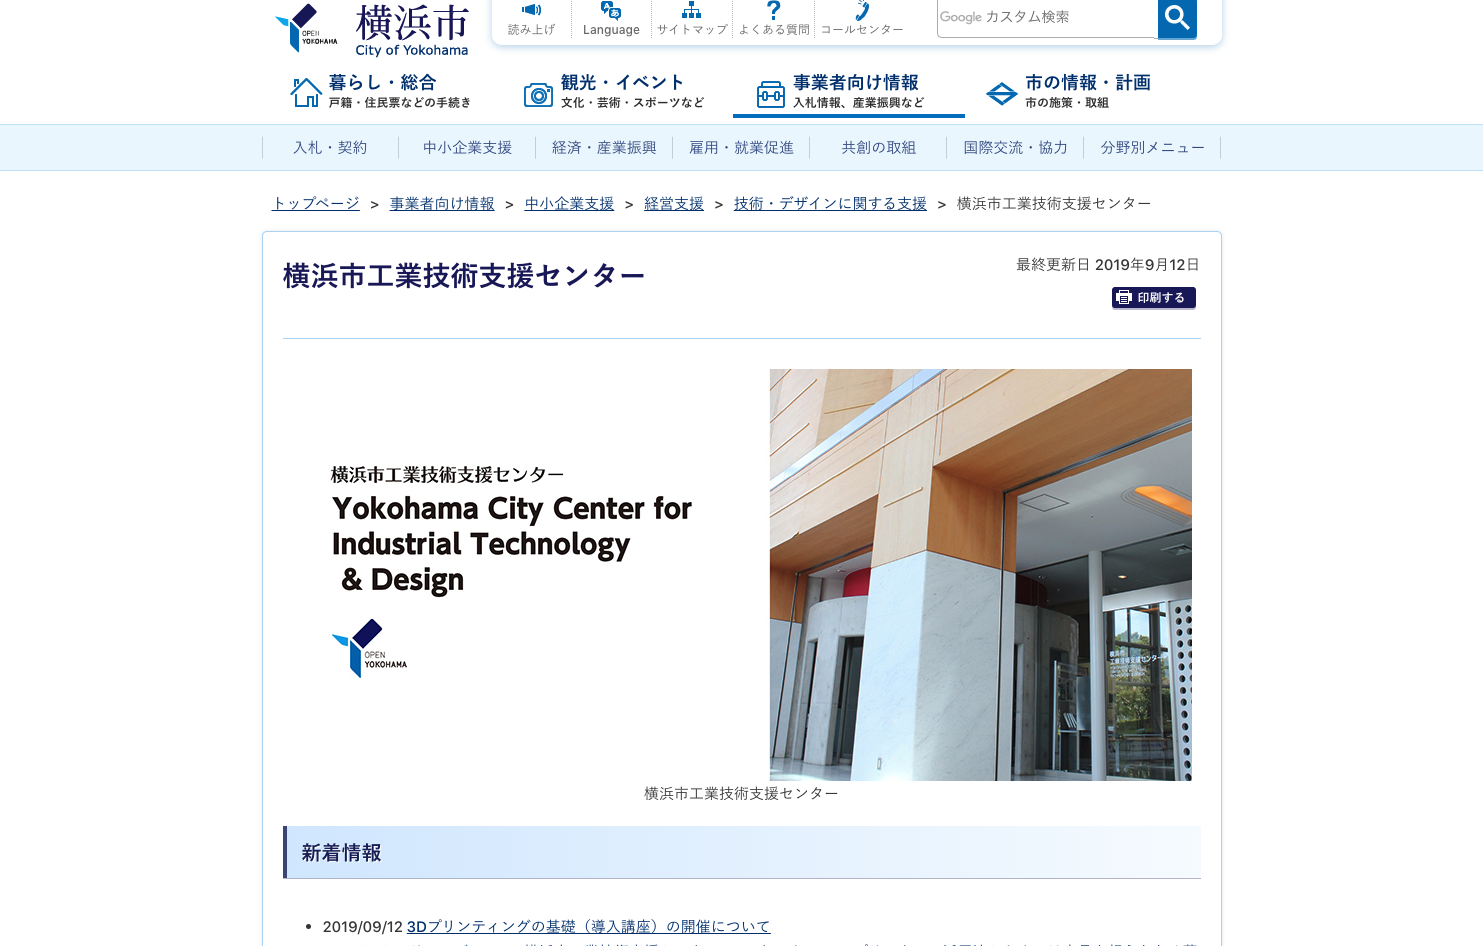 横浜市工業技術支援センターの横浜市工業技術支援センターサービス